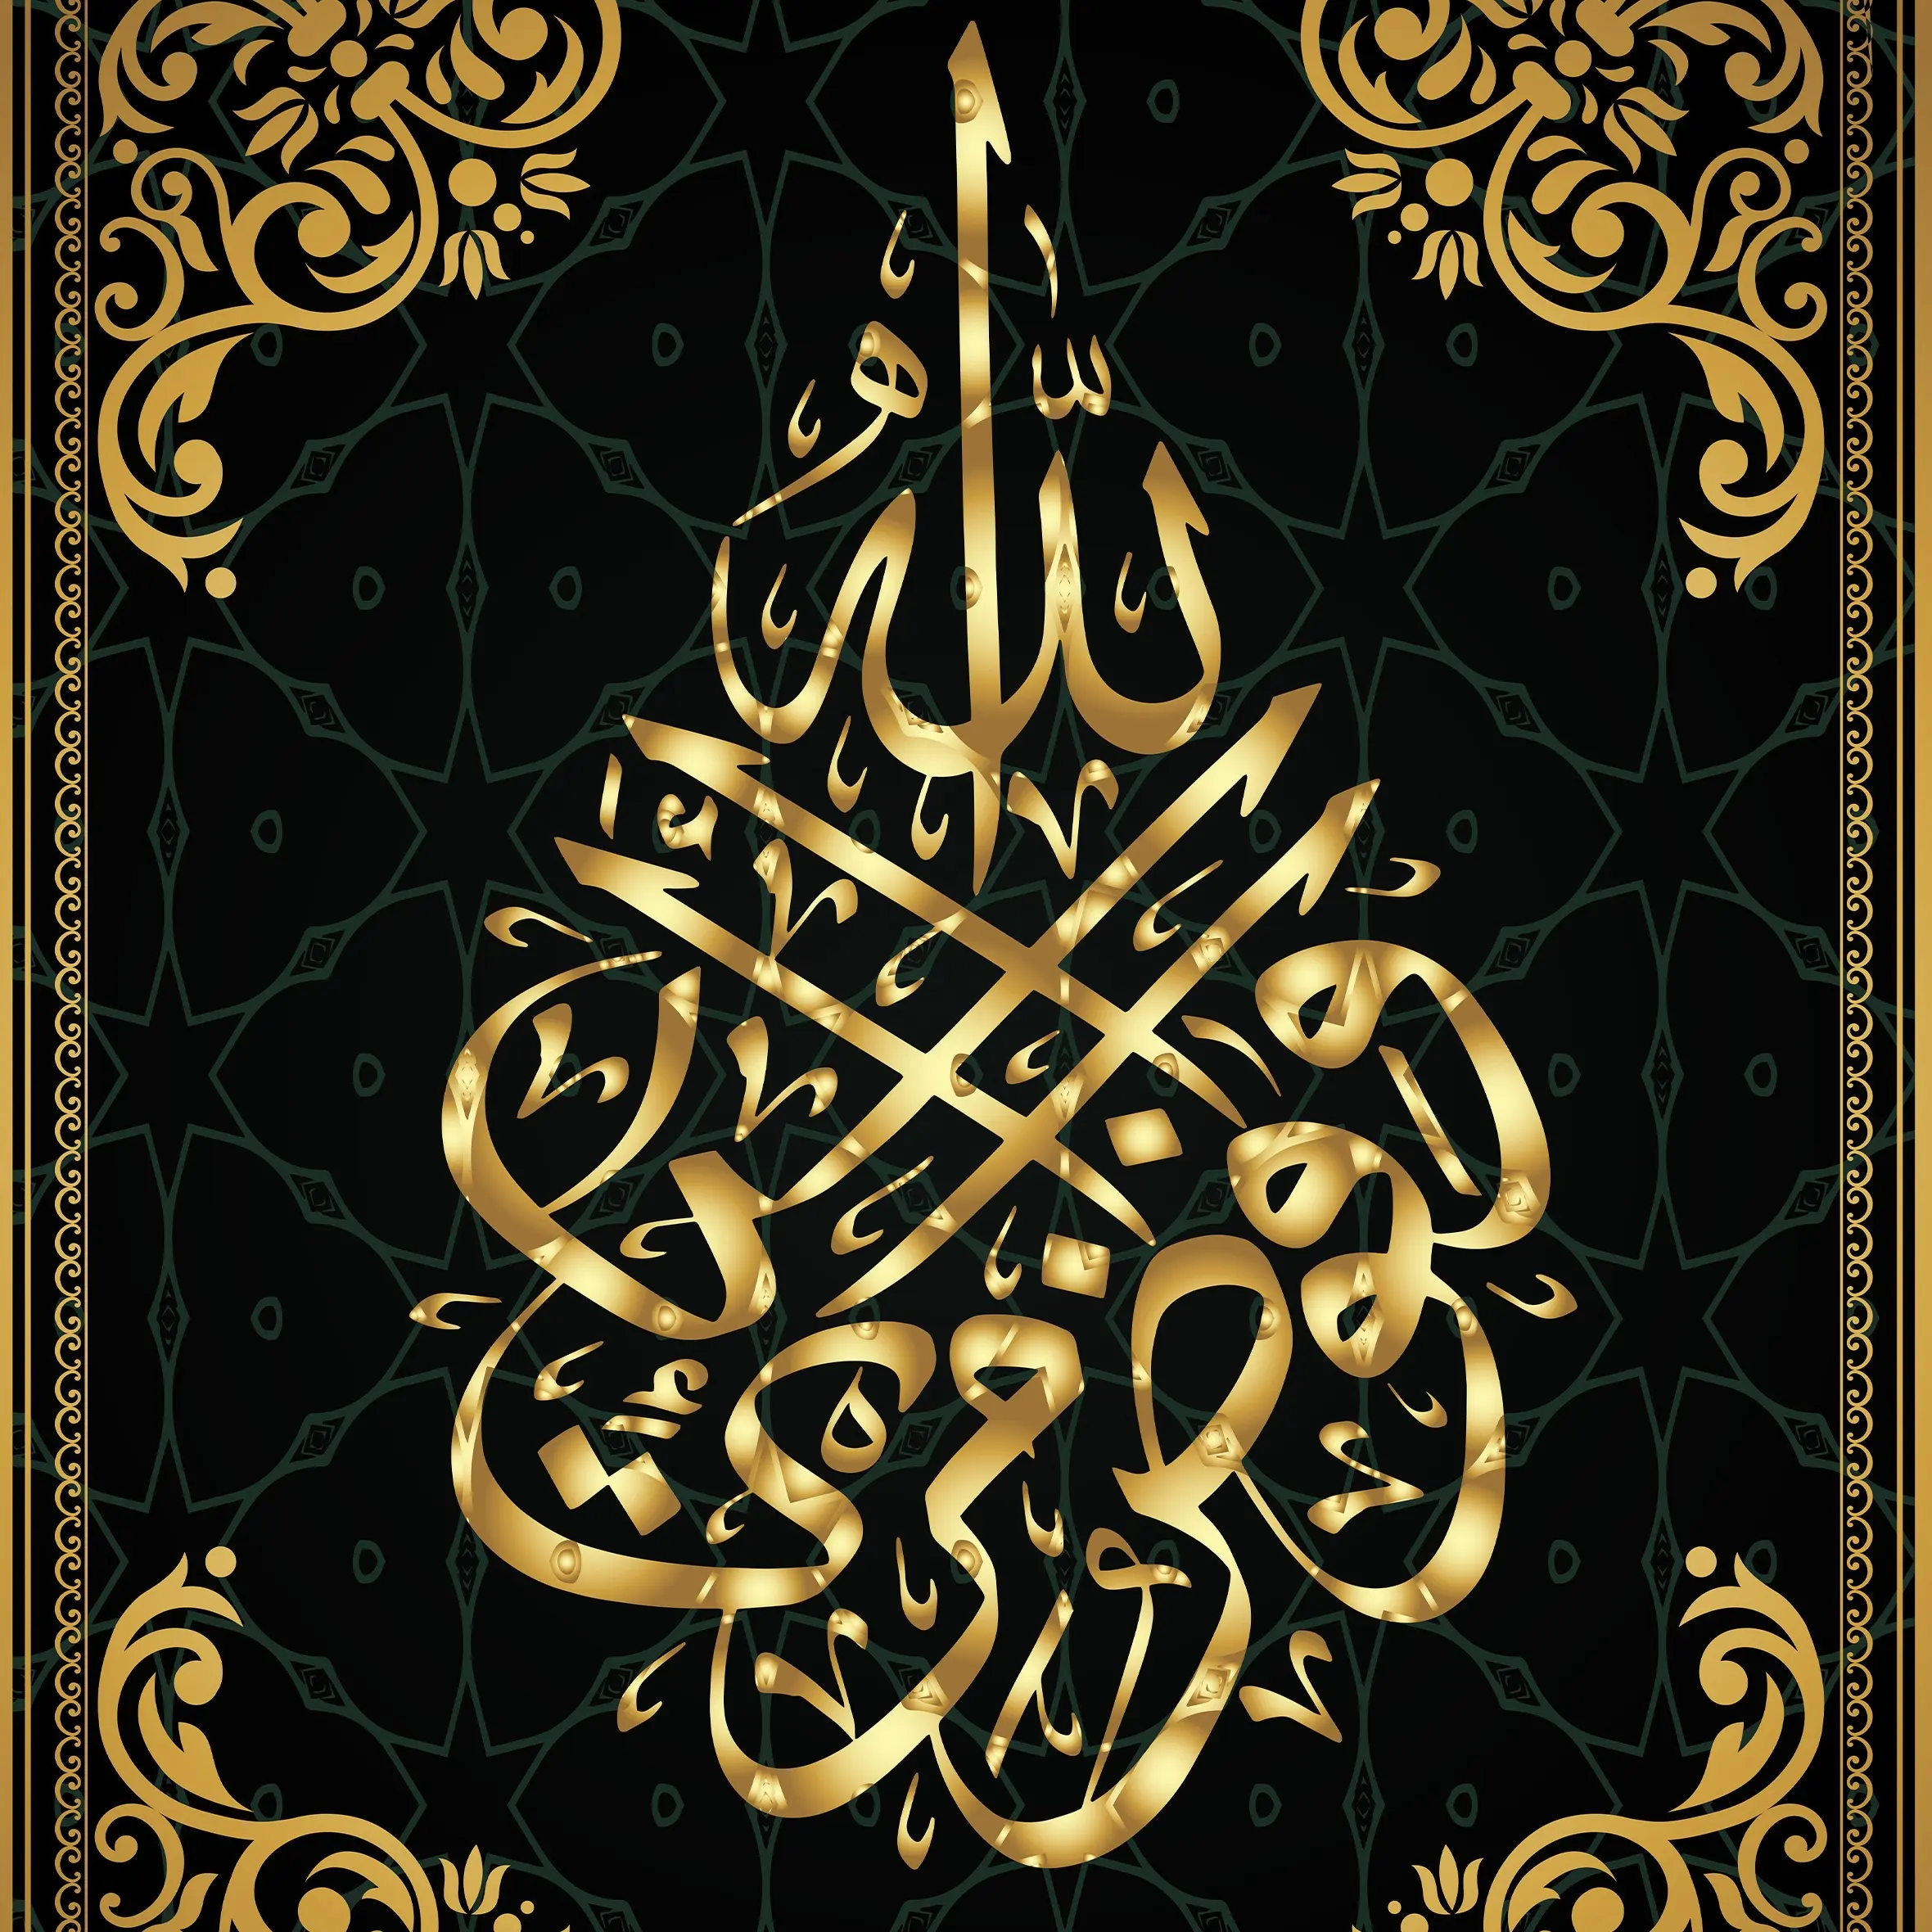 Impresión UV en acrílico, caligrafía musulmana islámica, decoración árabe, pintura de porcelana de cristal, arte de pared árabe, pinturas de resina